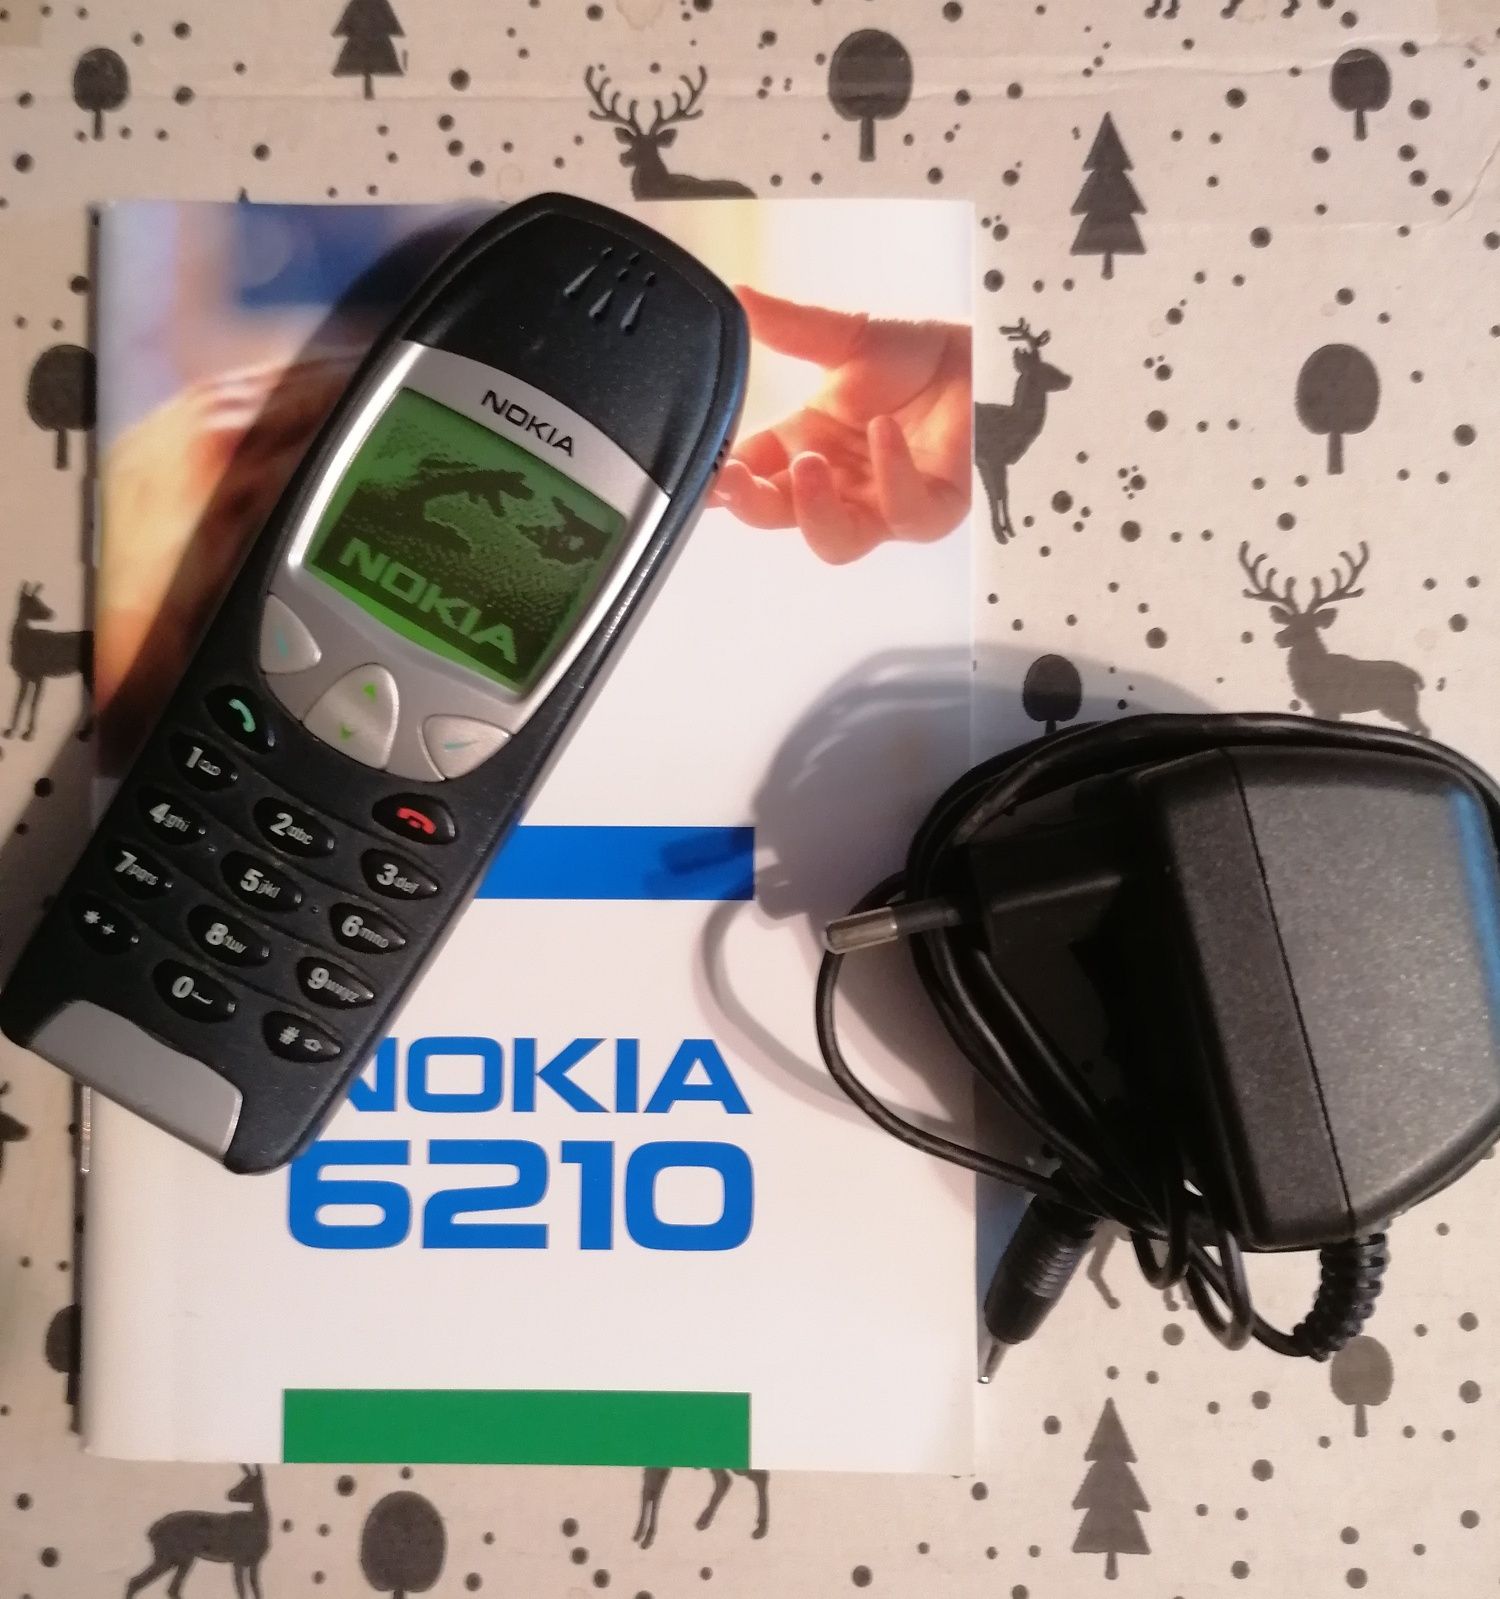 Kultowa Nokia 6210 z nową baterią, orginalną ładowarką i instrukcją